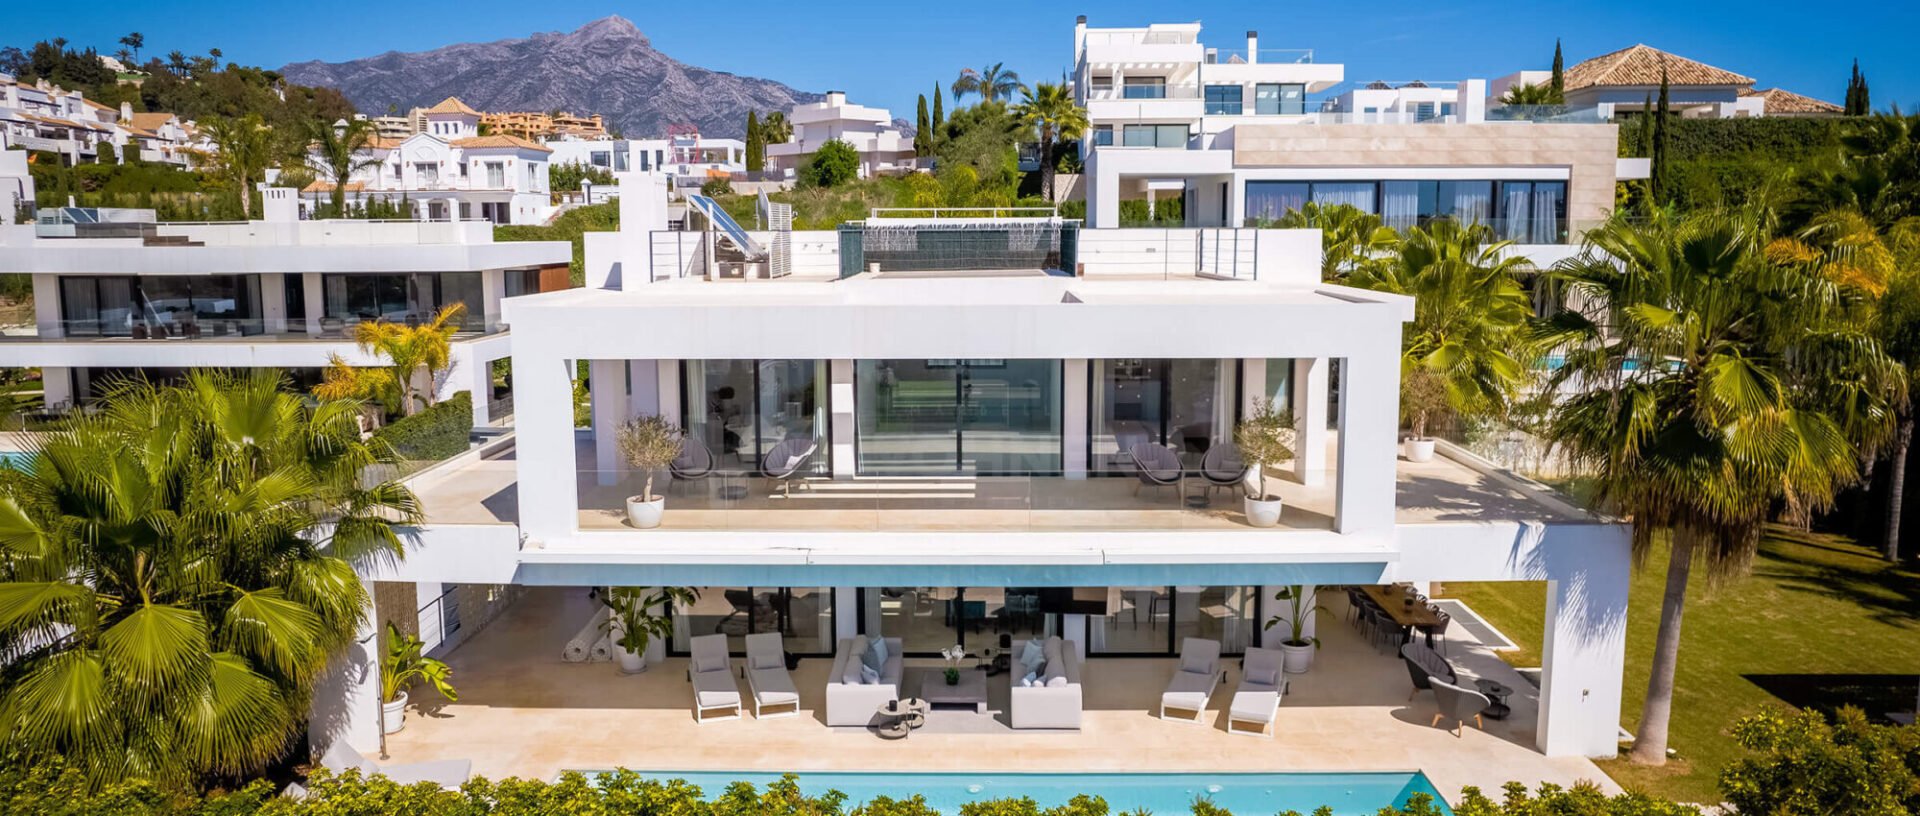 Contemporary luxury villa in a prestigious gated community